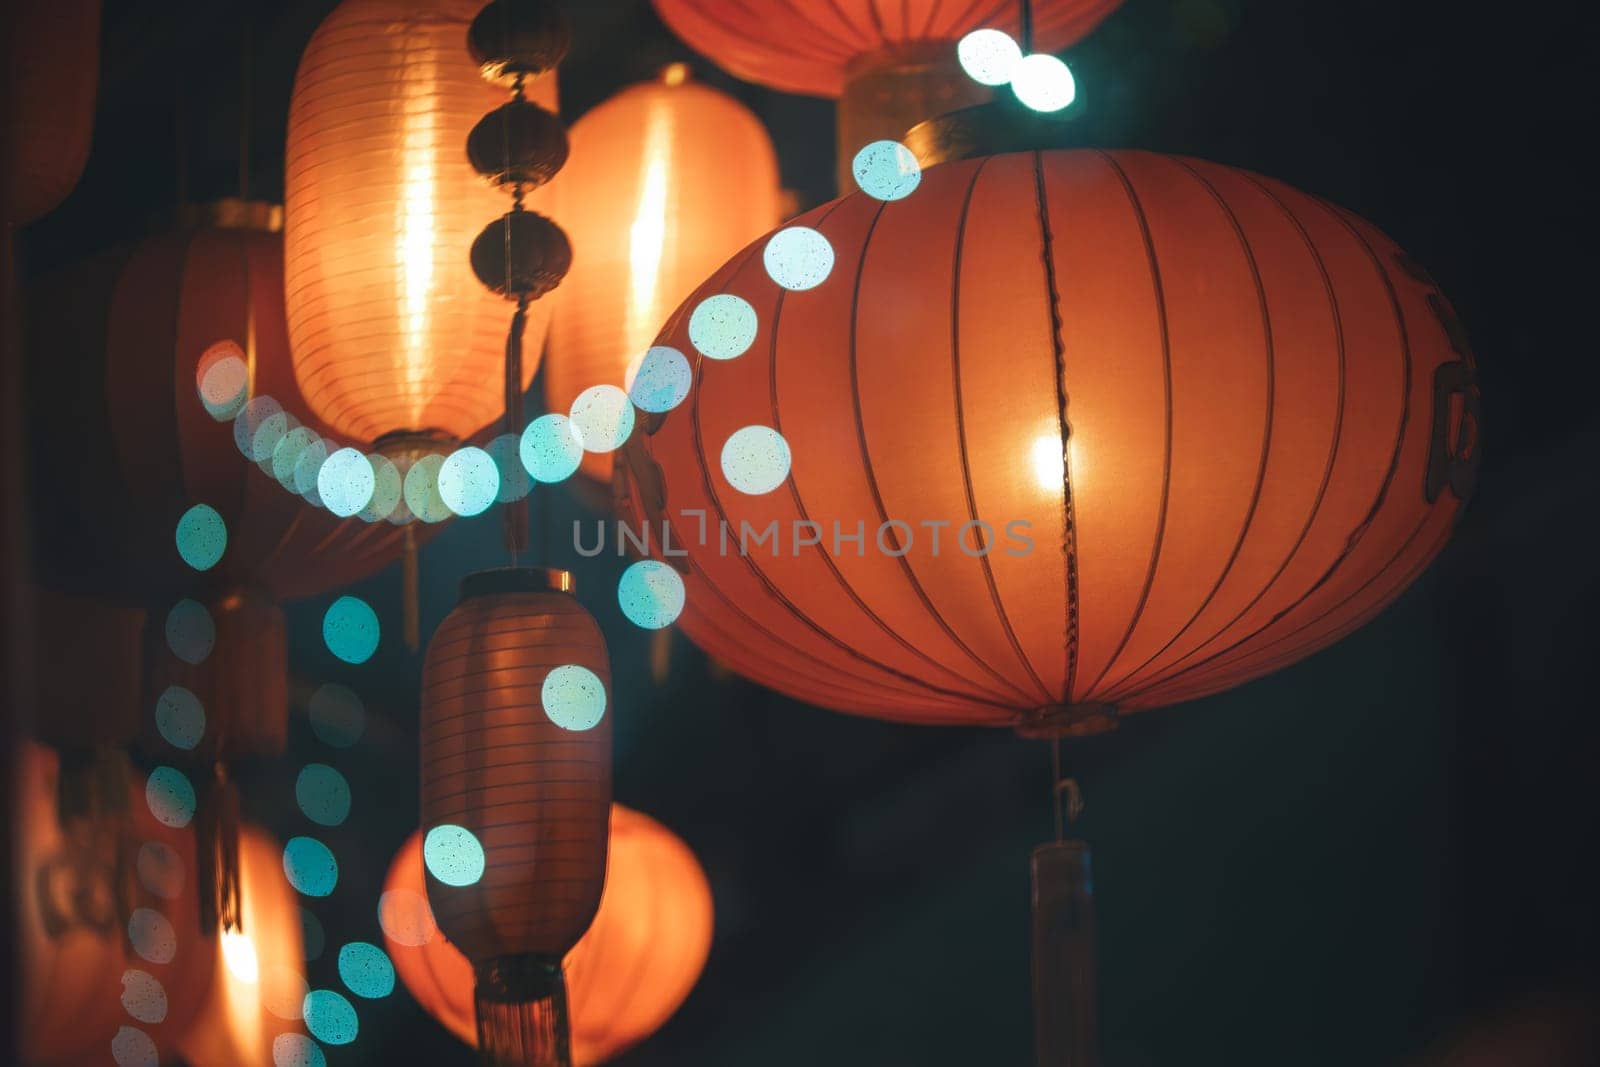 Orange china lanterns hanging among others by Studia72